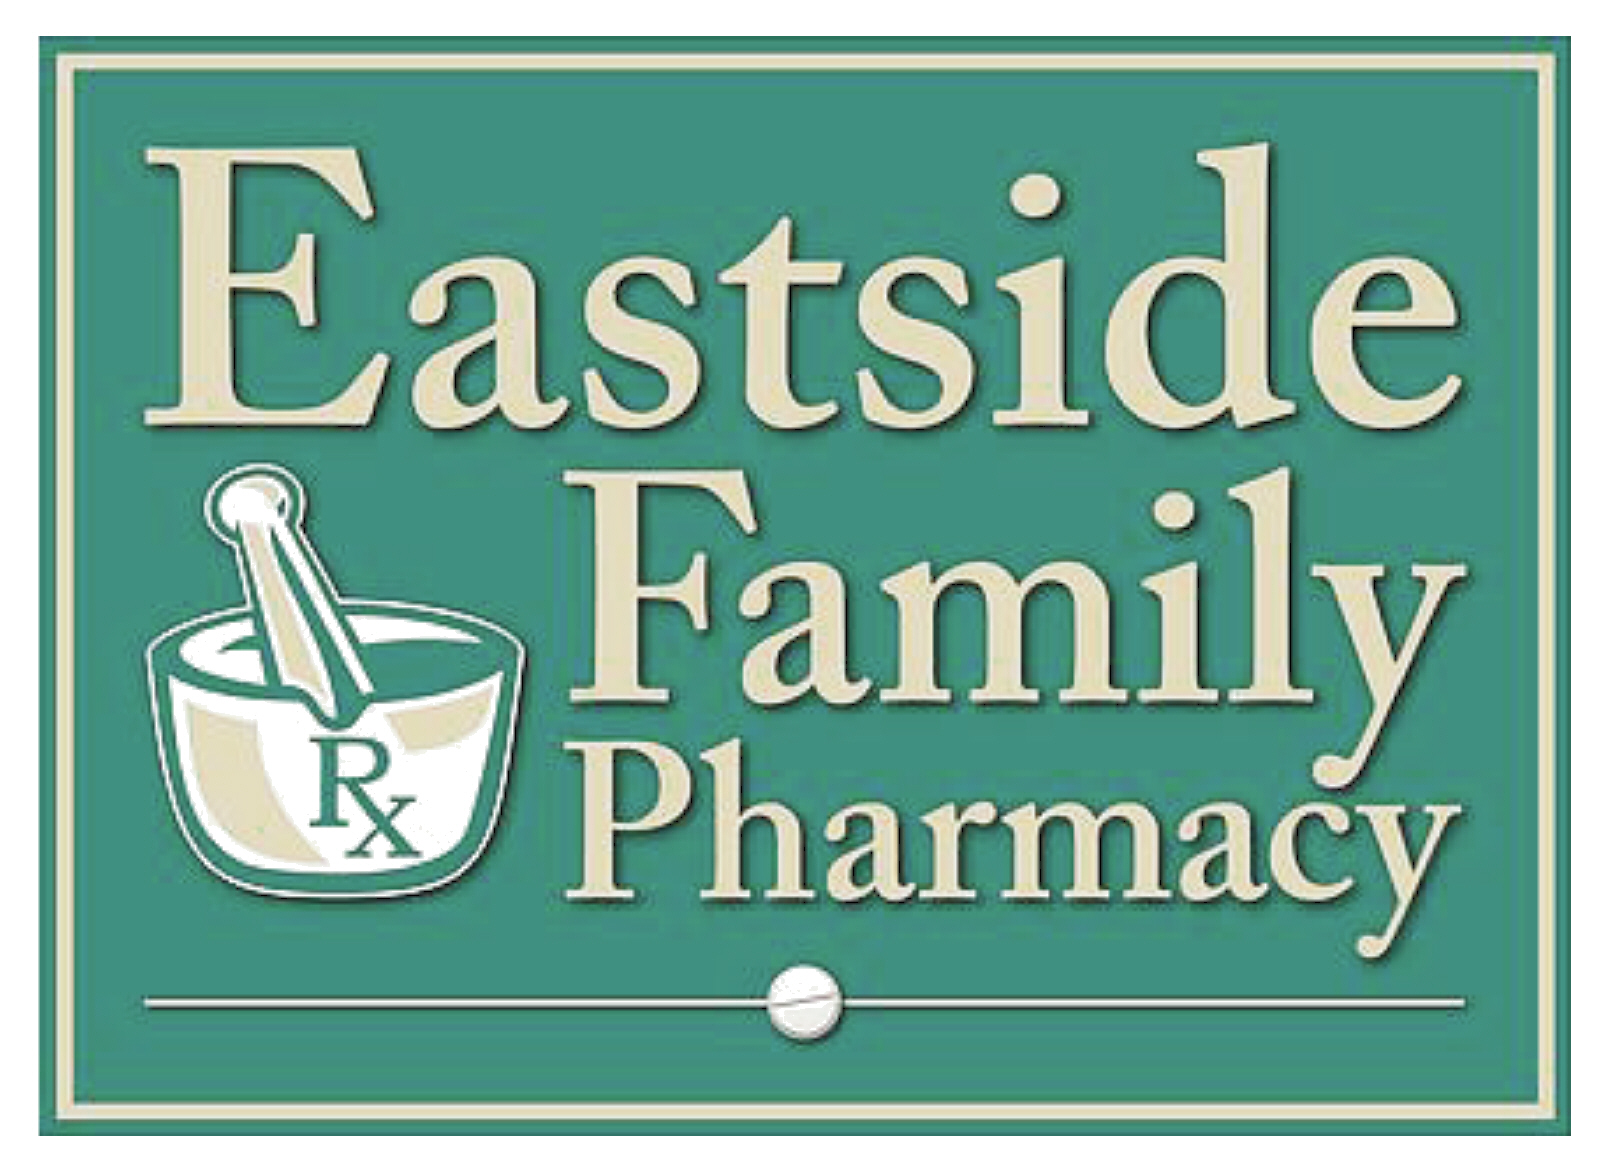 Eastside Family Pharmacy